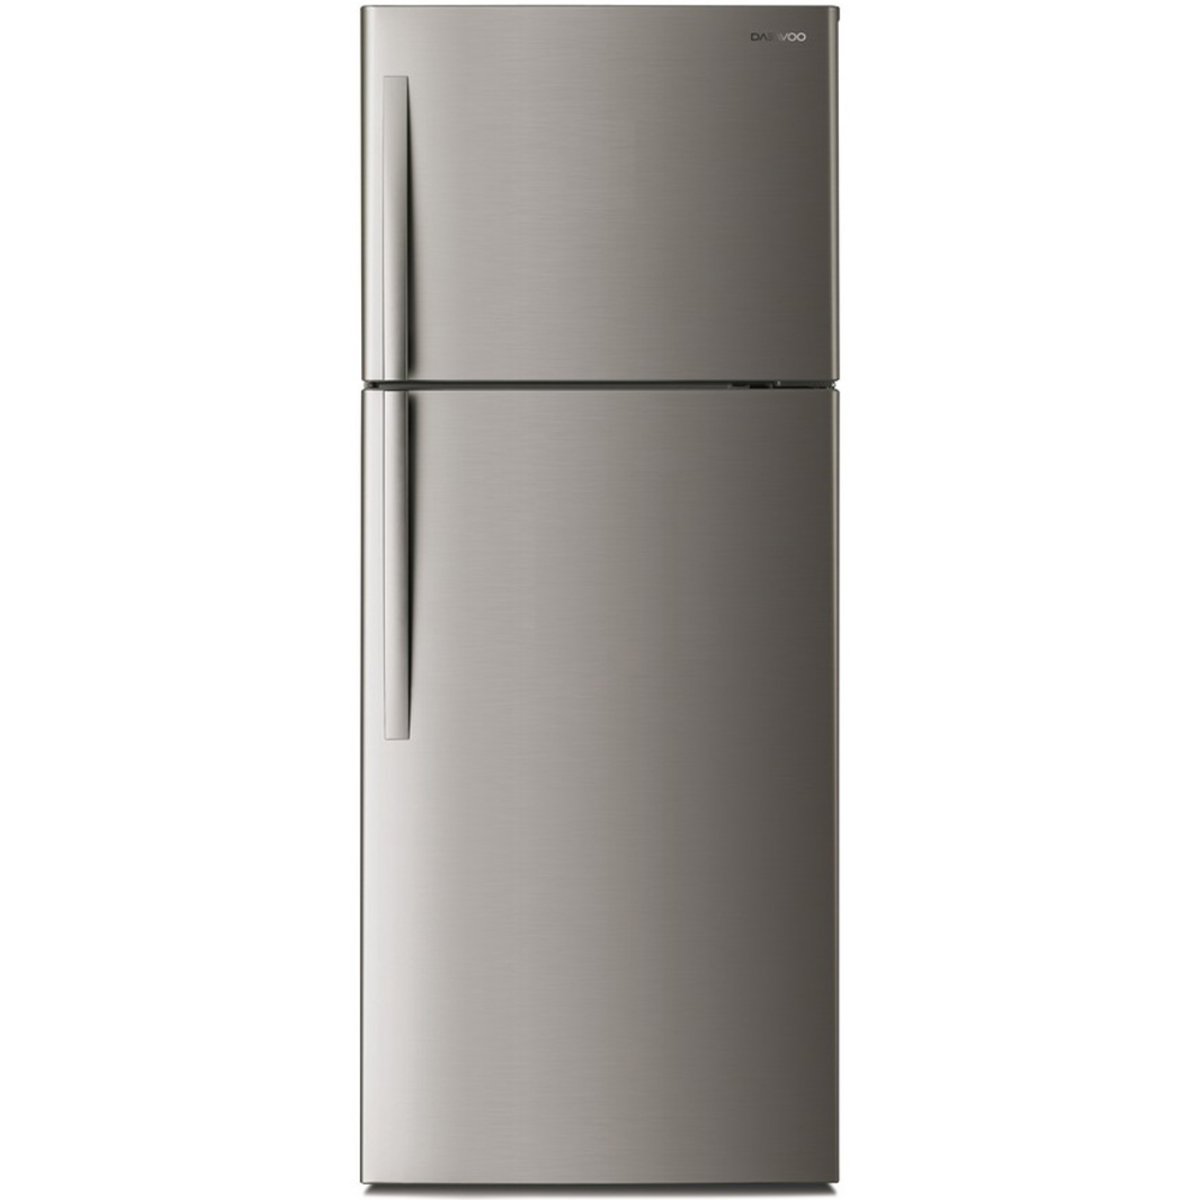 Daewoo Double Door Refrigerator FN-475S3F 470 Ltr